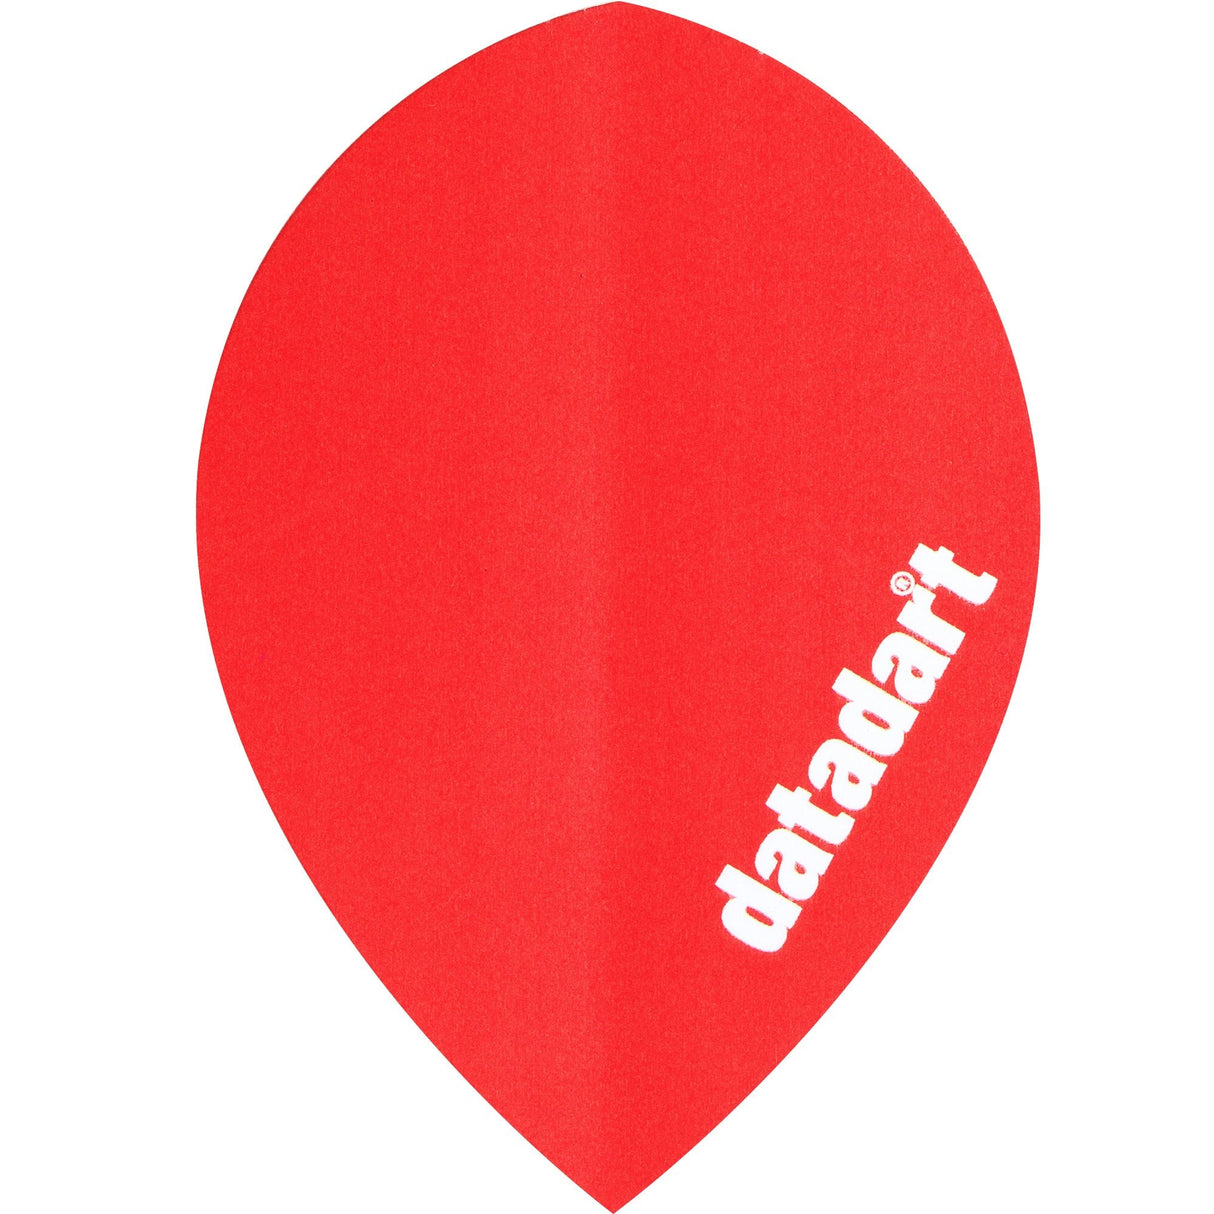 Datadart Dart Flights - CMF Designs - Pear - Red